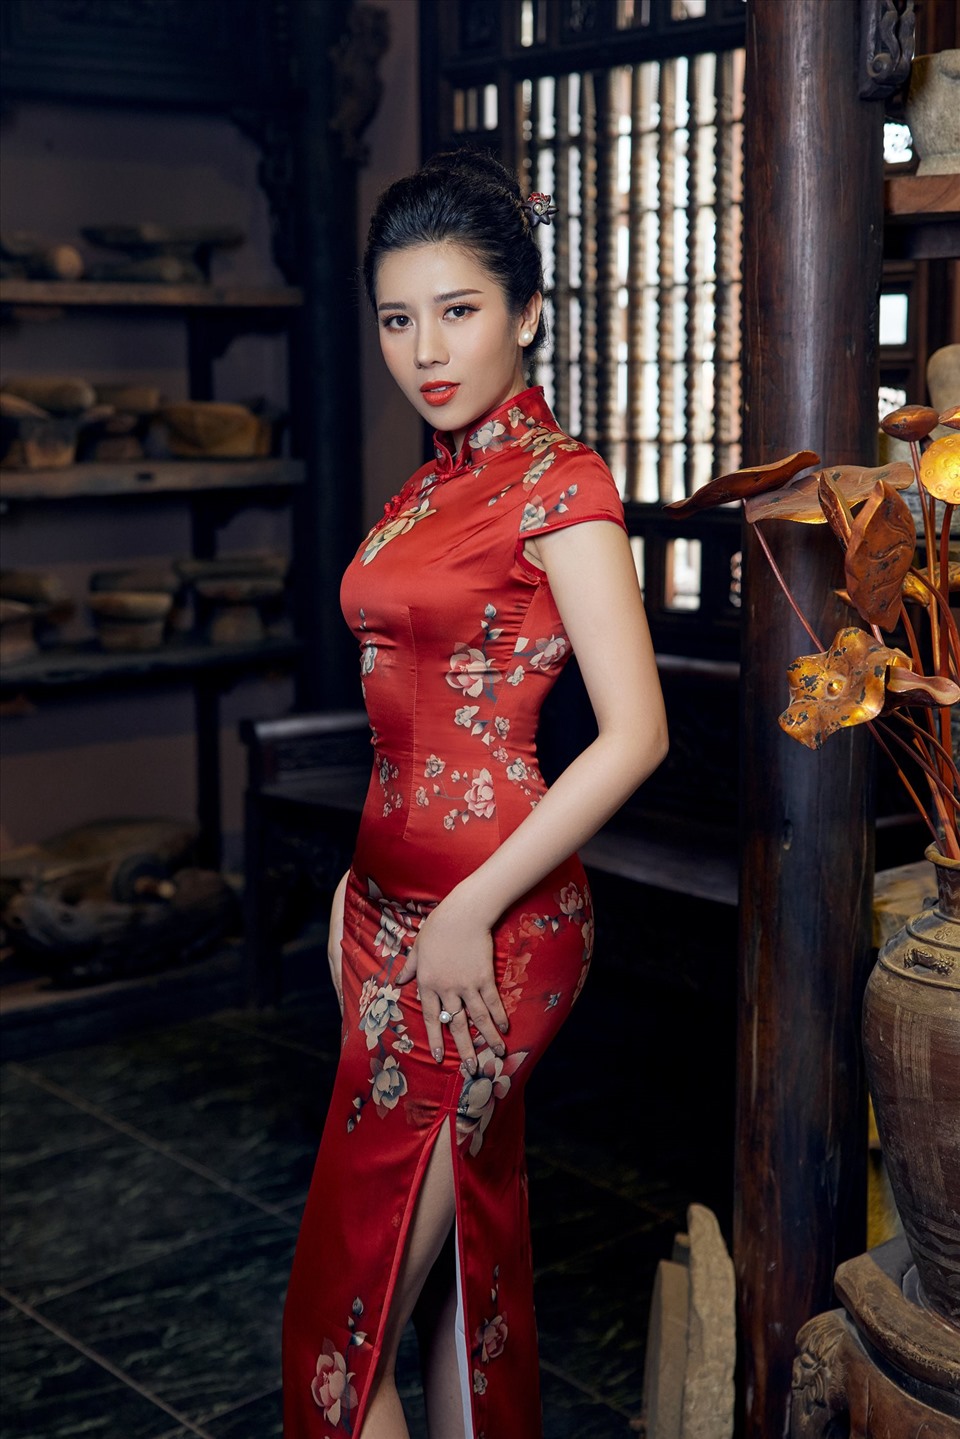 Chào đón xuân mới, Hoa hậu Dương Yến Nhung quyết định chọn cho mình các thiết kế áo dài truyền thống nhưng được cách tân vô cùng ấn tượng. Người đẹp nhận nhiều lời khen ngợi bởi sự duyên dáng khi khoác lên mình những thiết kế nhiều màu sắc, tươi trẻ.